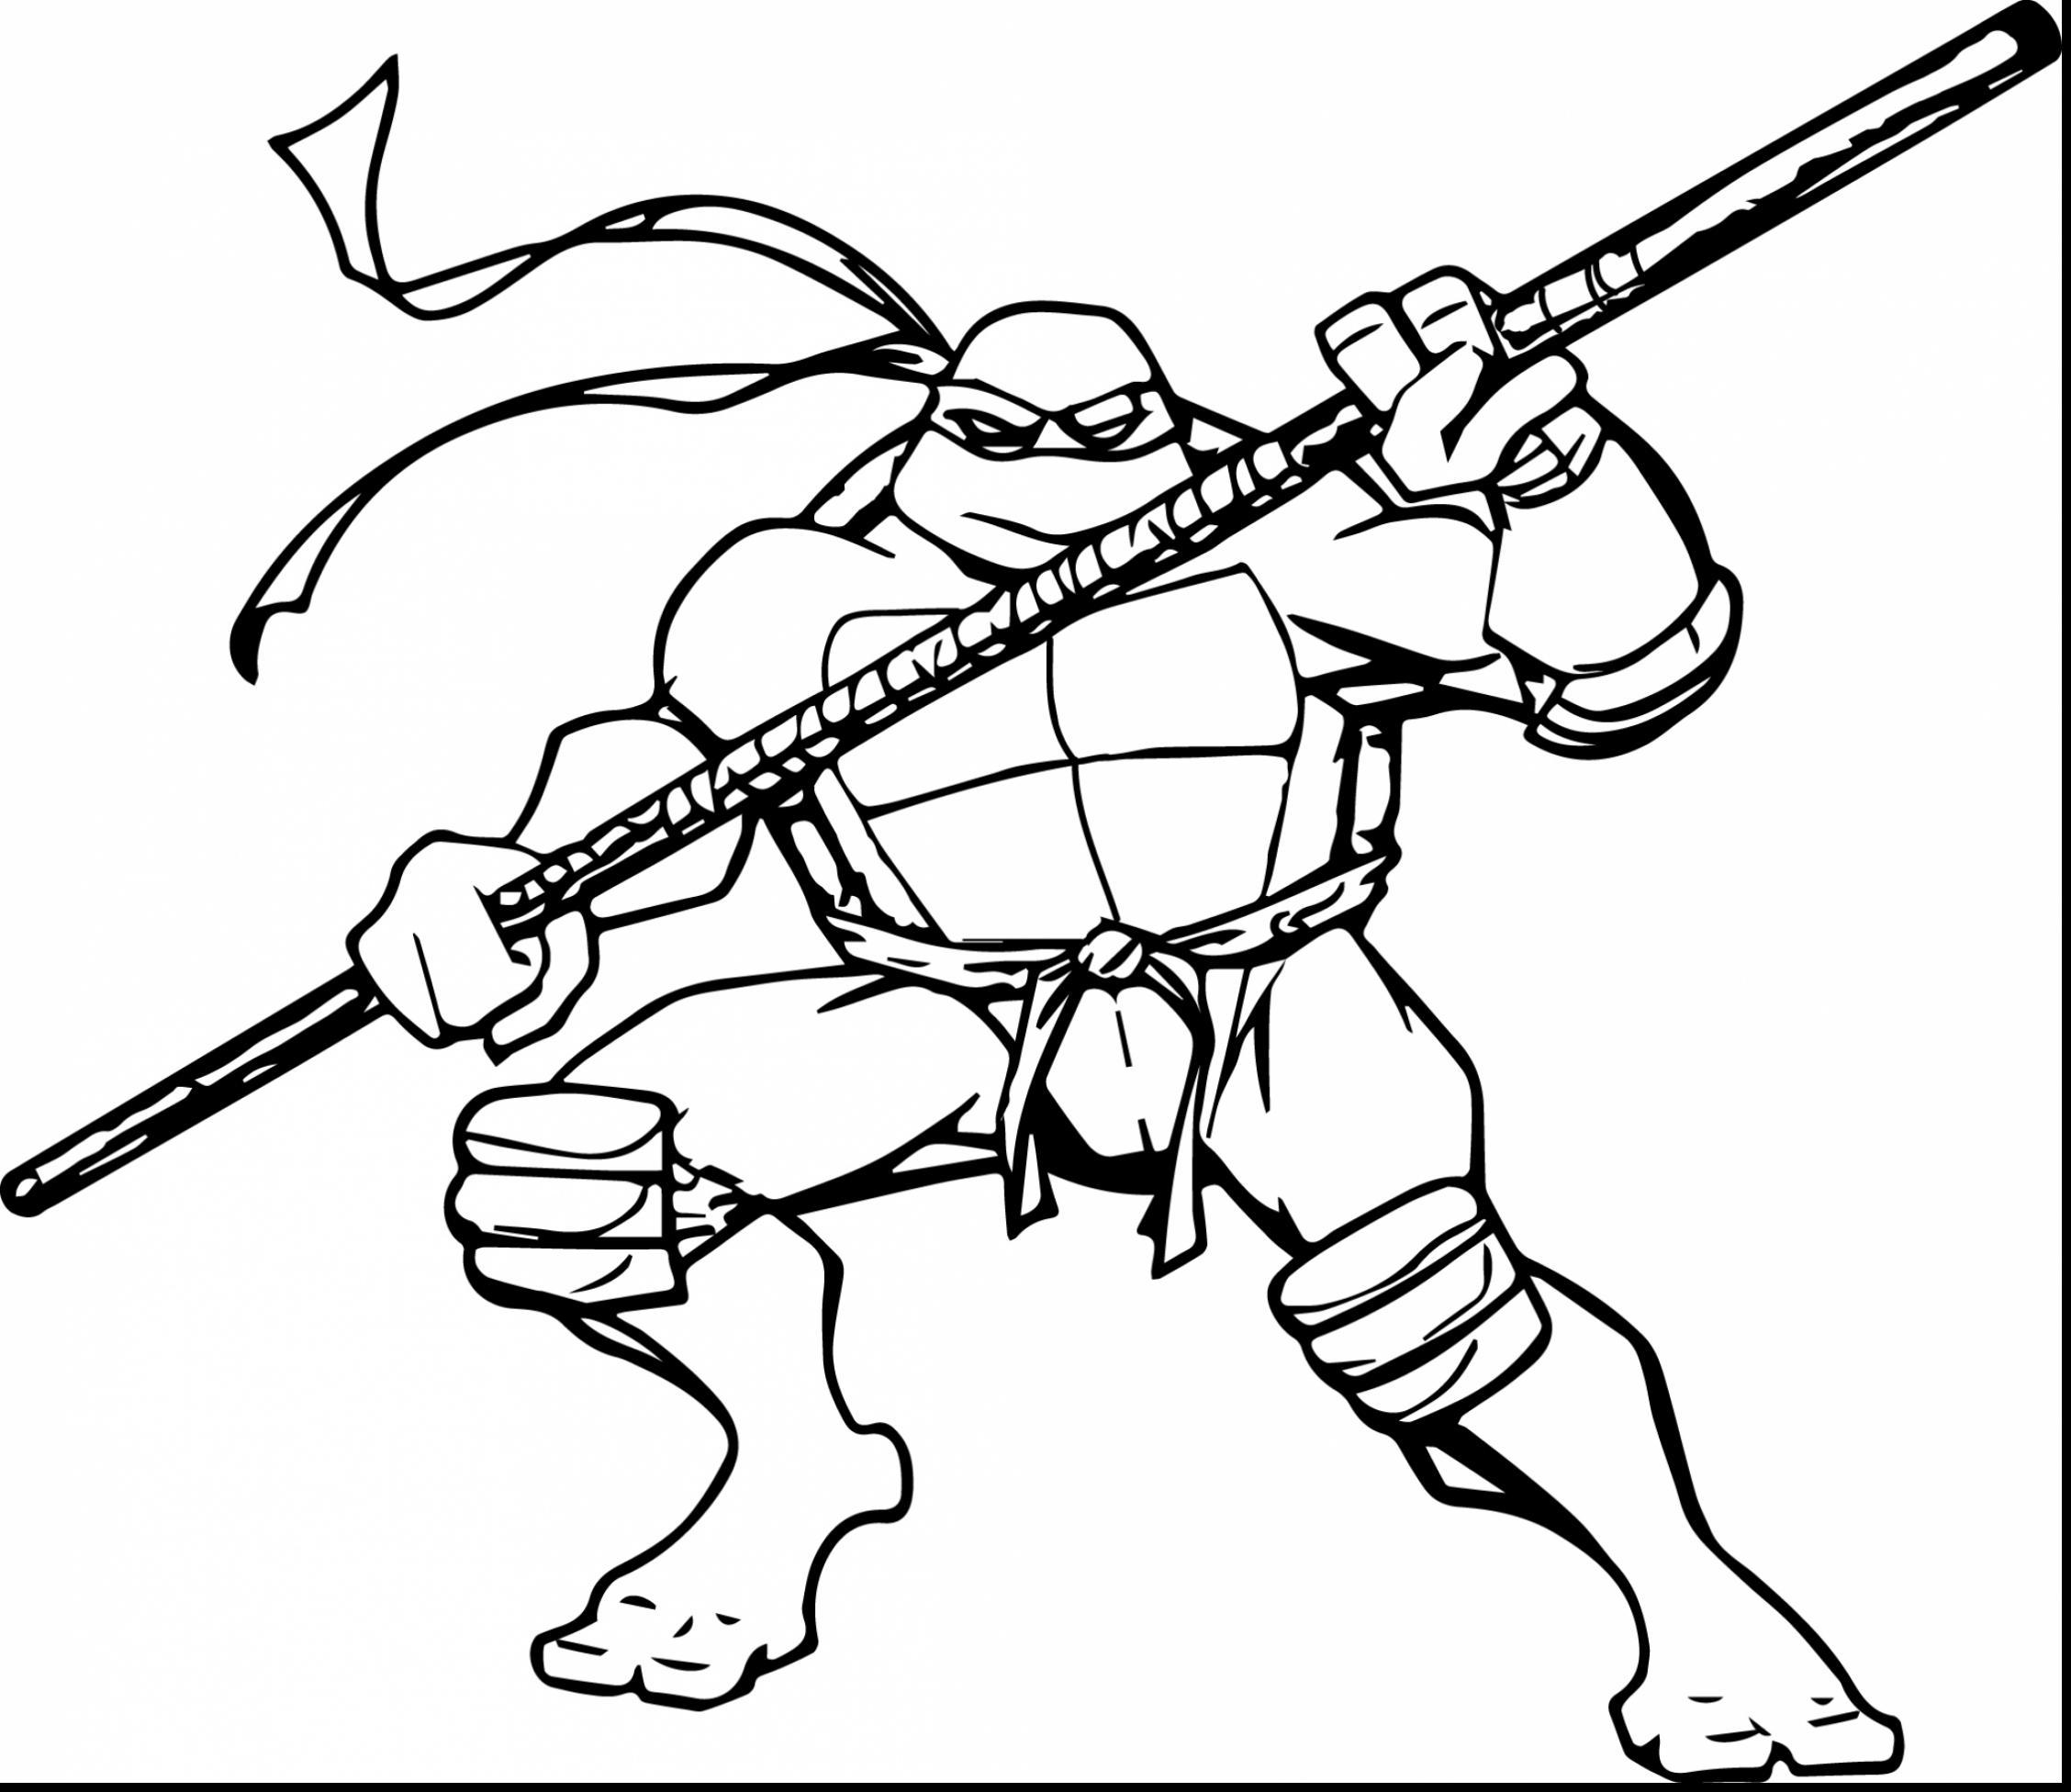 nickelodeon-teenage-mutant-ninja-turtles-coloring-pages-at-getcolorings